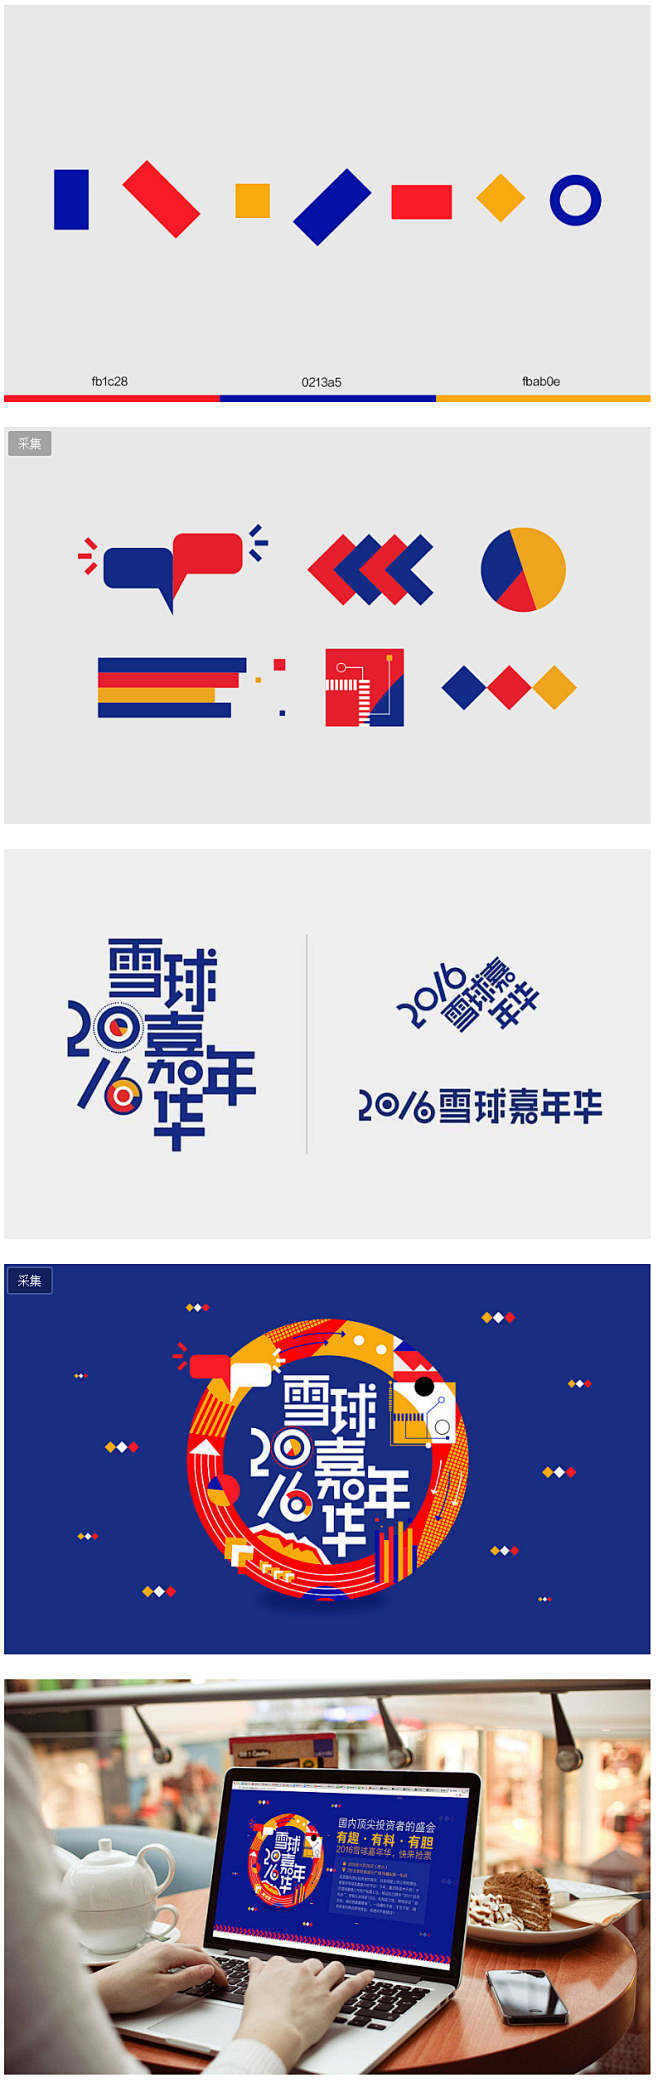 2016雪球嘉年华 - 设计互动